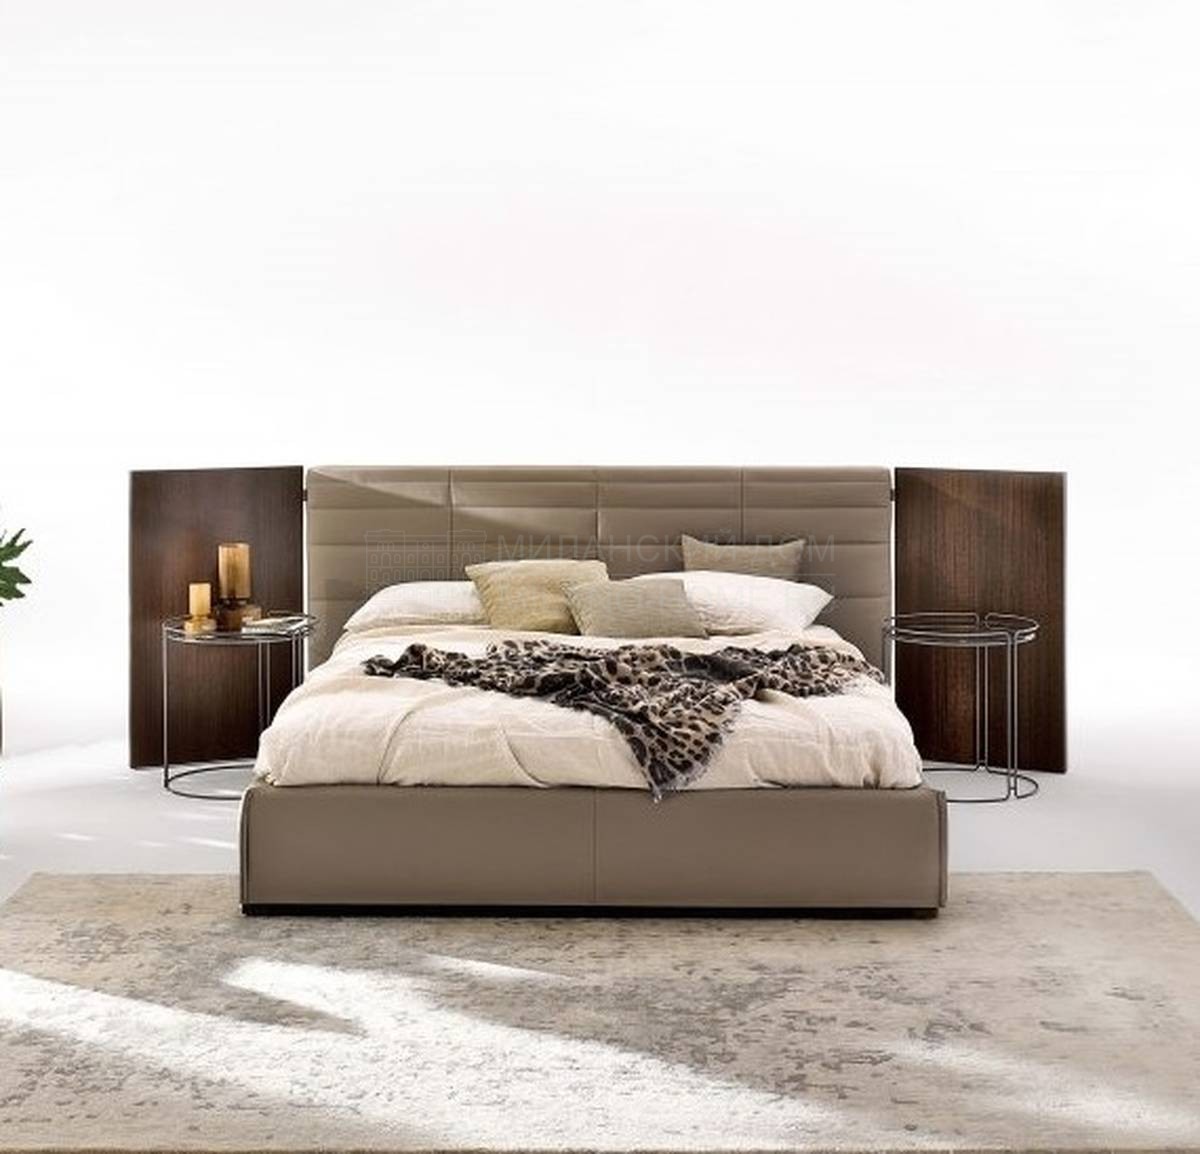 Кровать с мягким изголовьем Grandangolo из Италии фабрики DITRE ITALIA